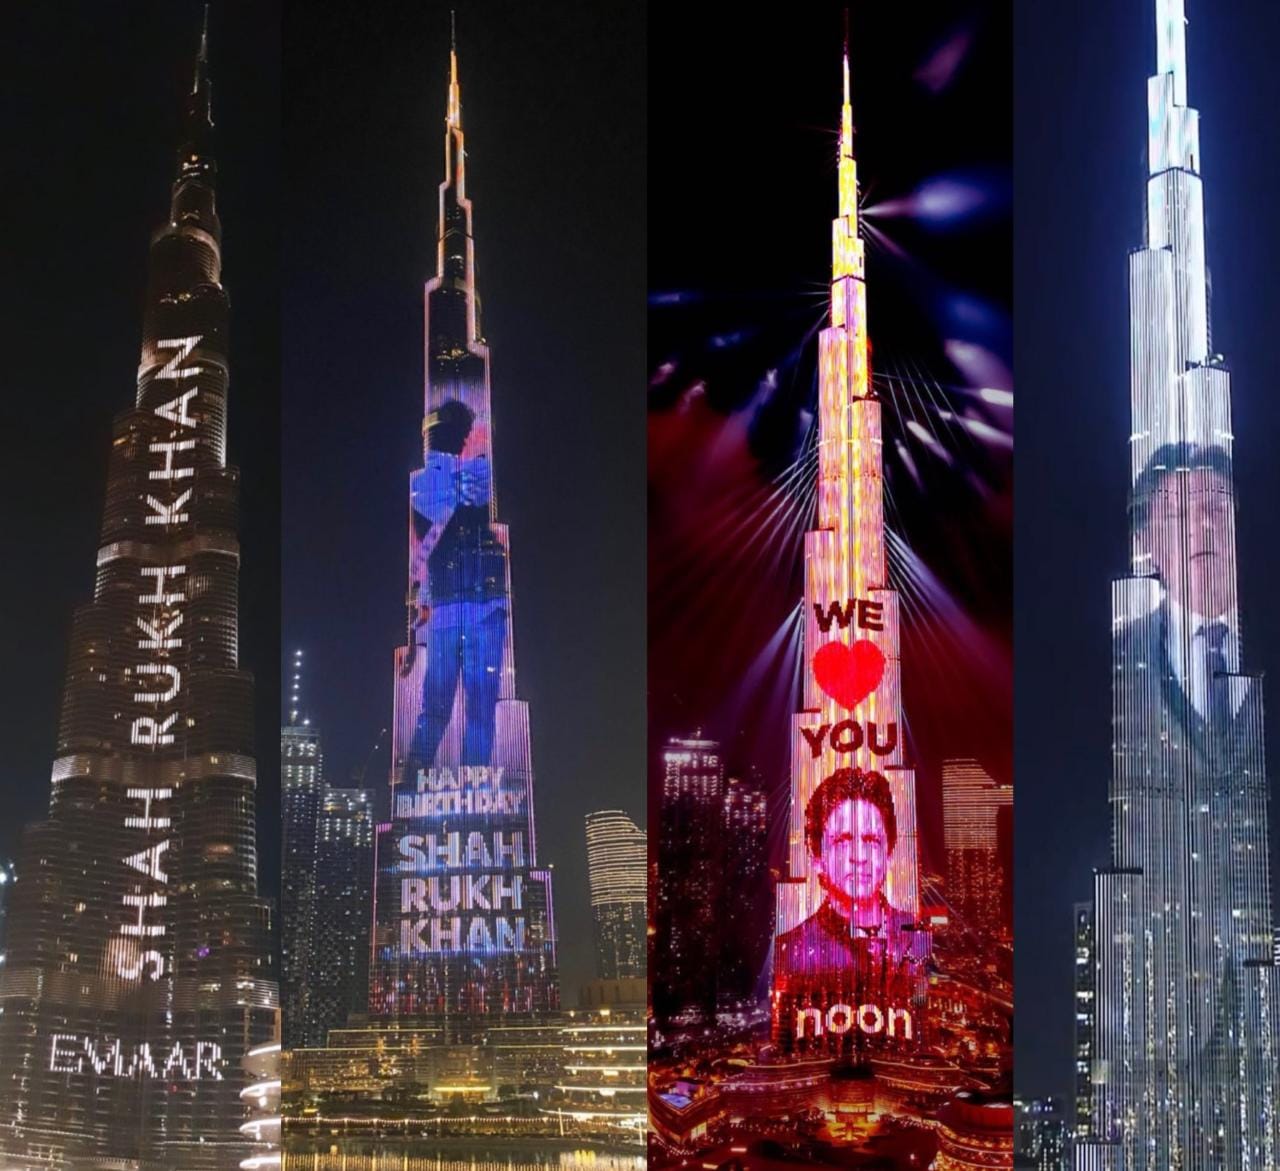 Shah Rukh Khan Birthday Wish Video on Burj Khalifa 